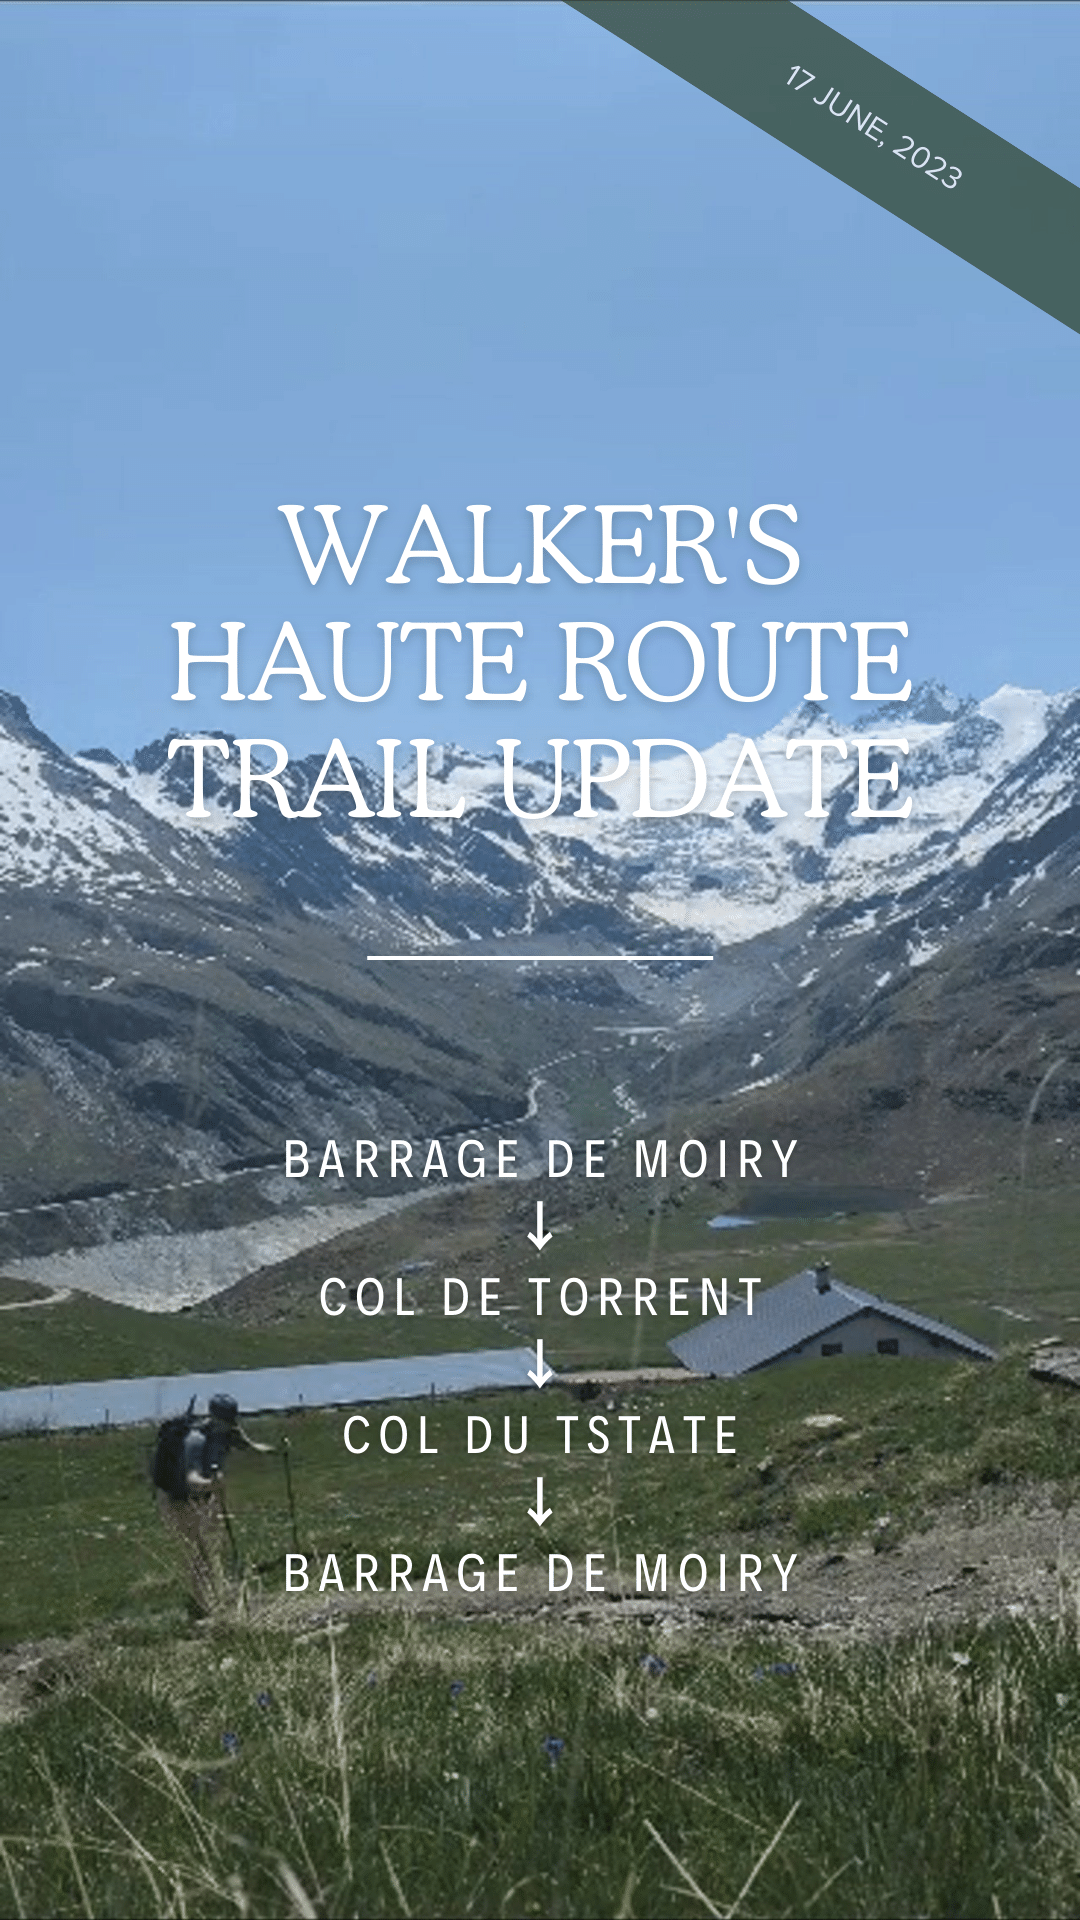 Col de Torrent + Col du Tsate